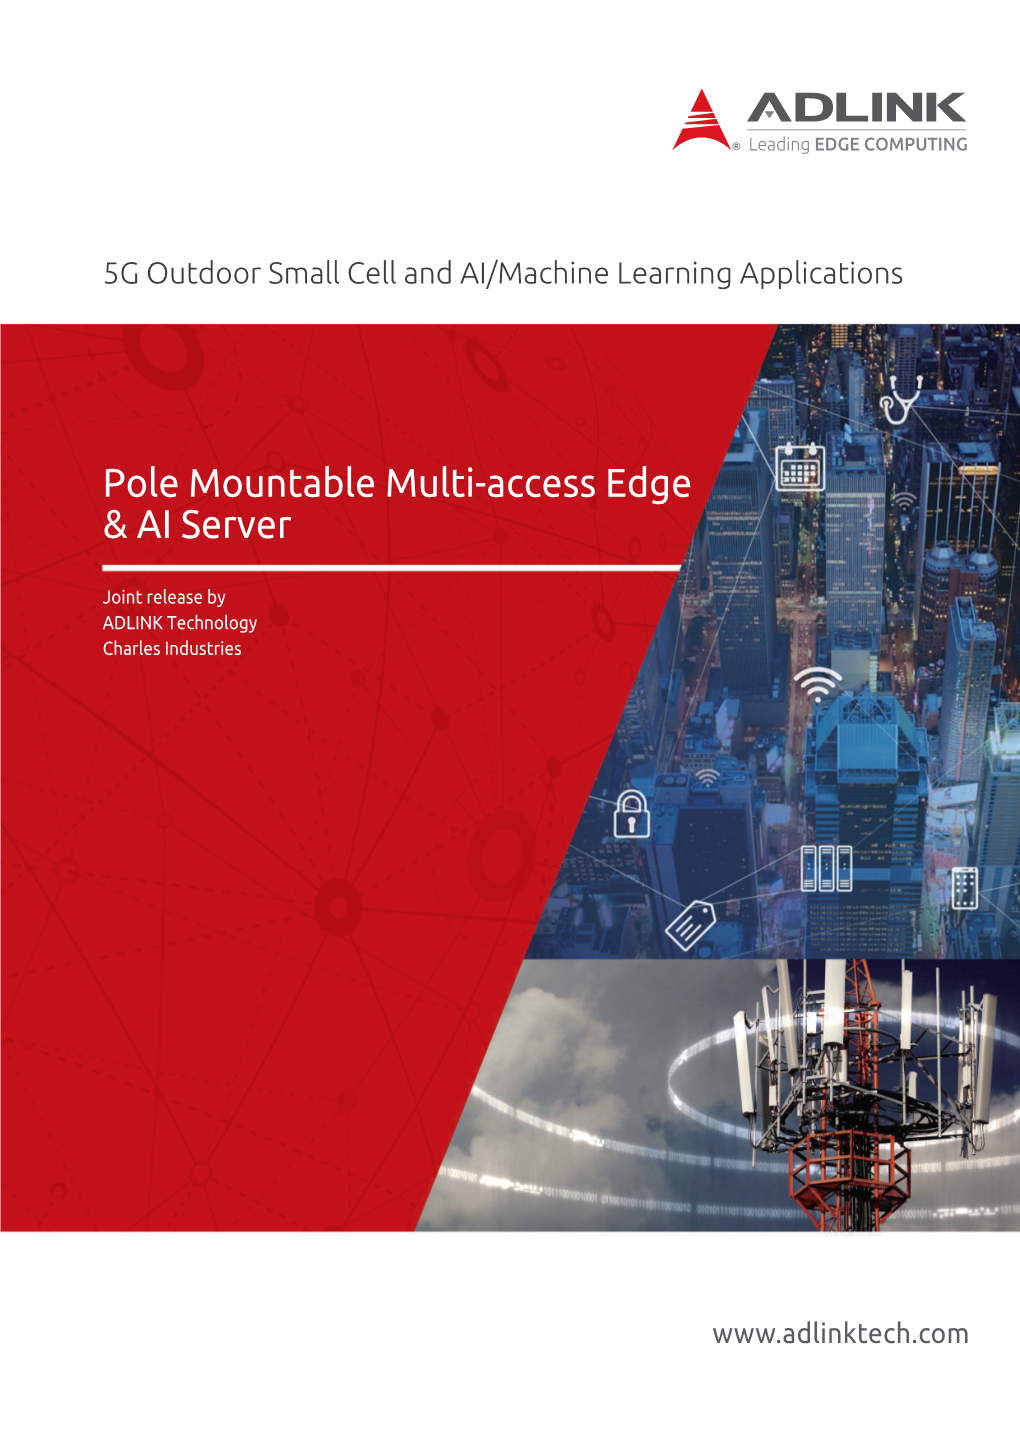 Pole Mountable Multi-Access Edge & AI Server